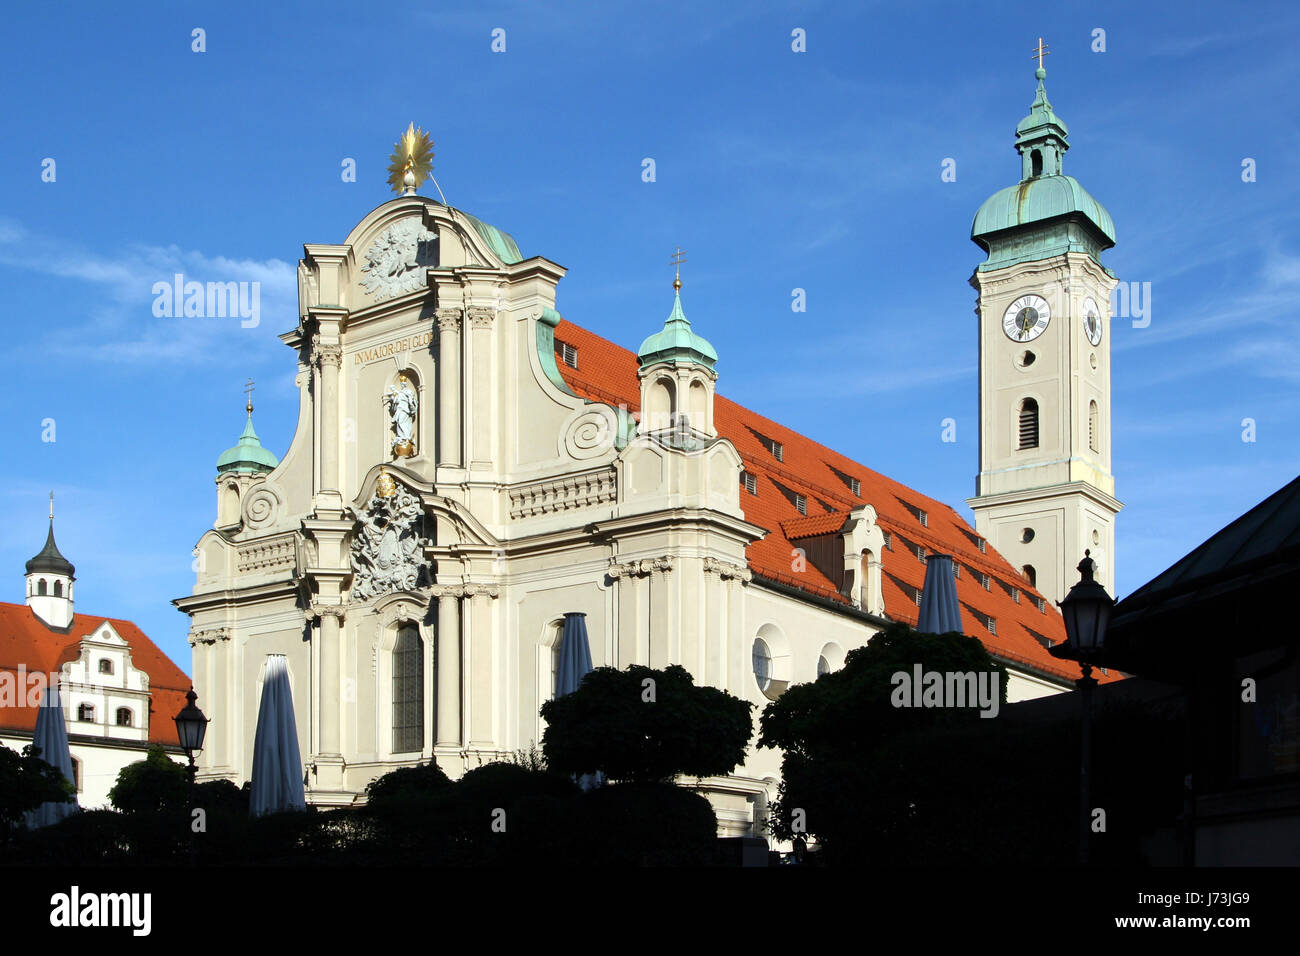 heiliggeistkirche in munich 1 Stock Photo